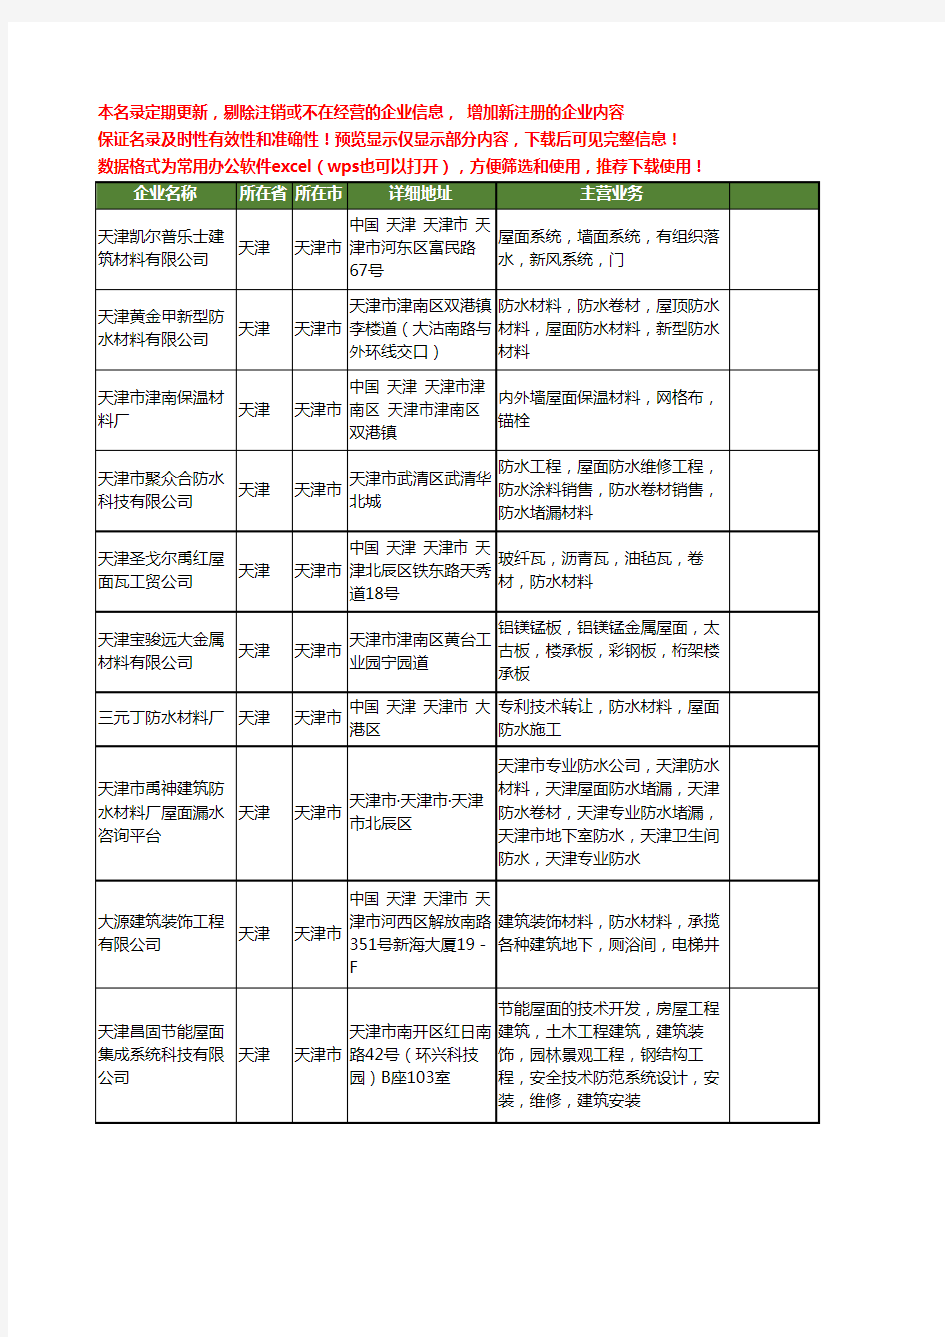 新版天津市屋面材料工商企业公司商家名录名单联系方式大全16家